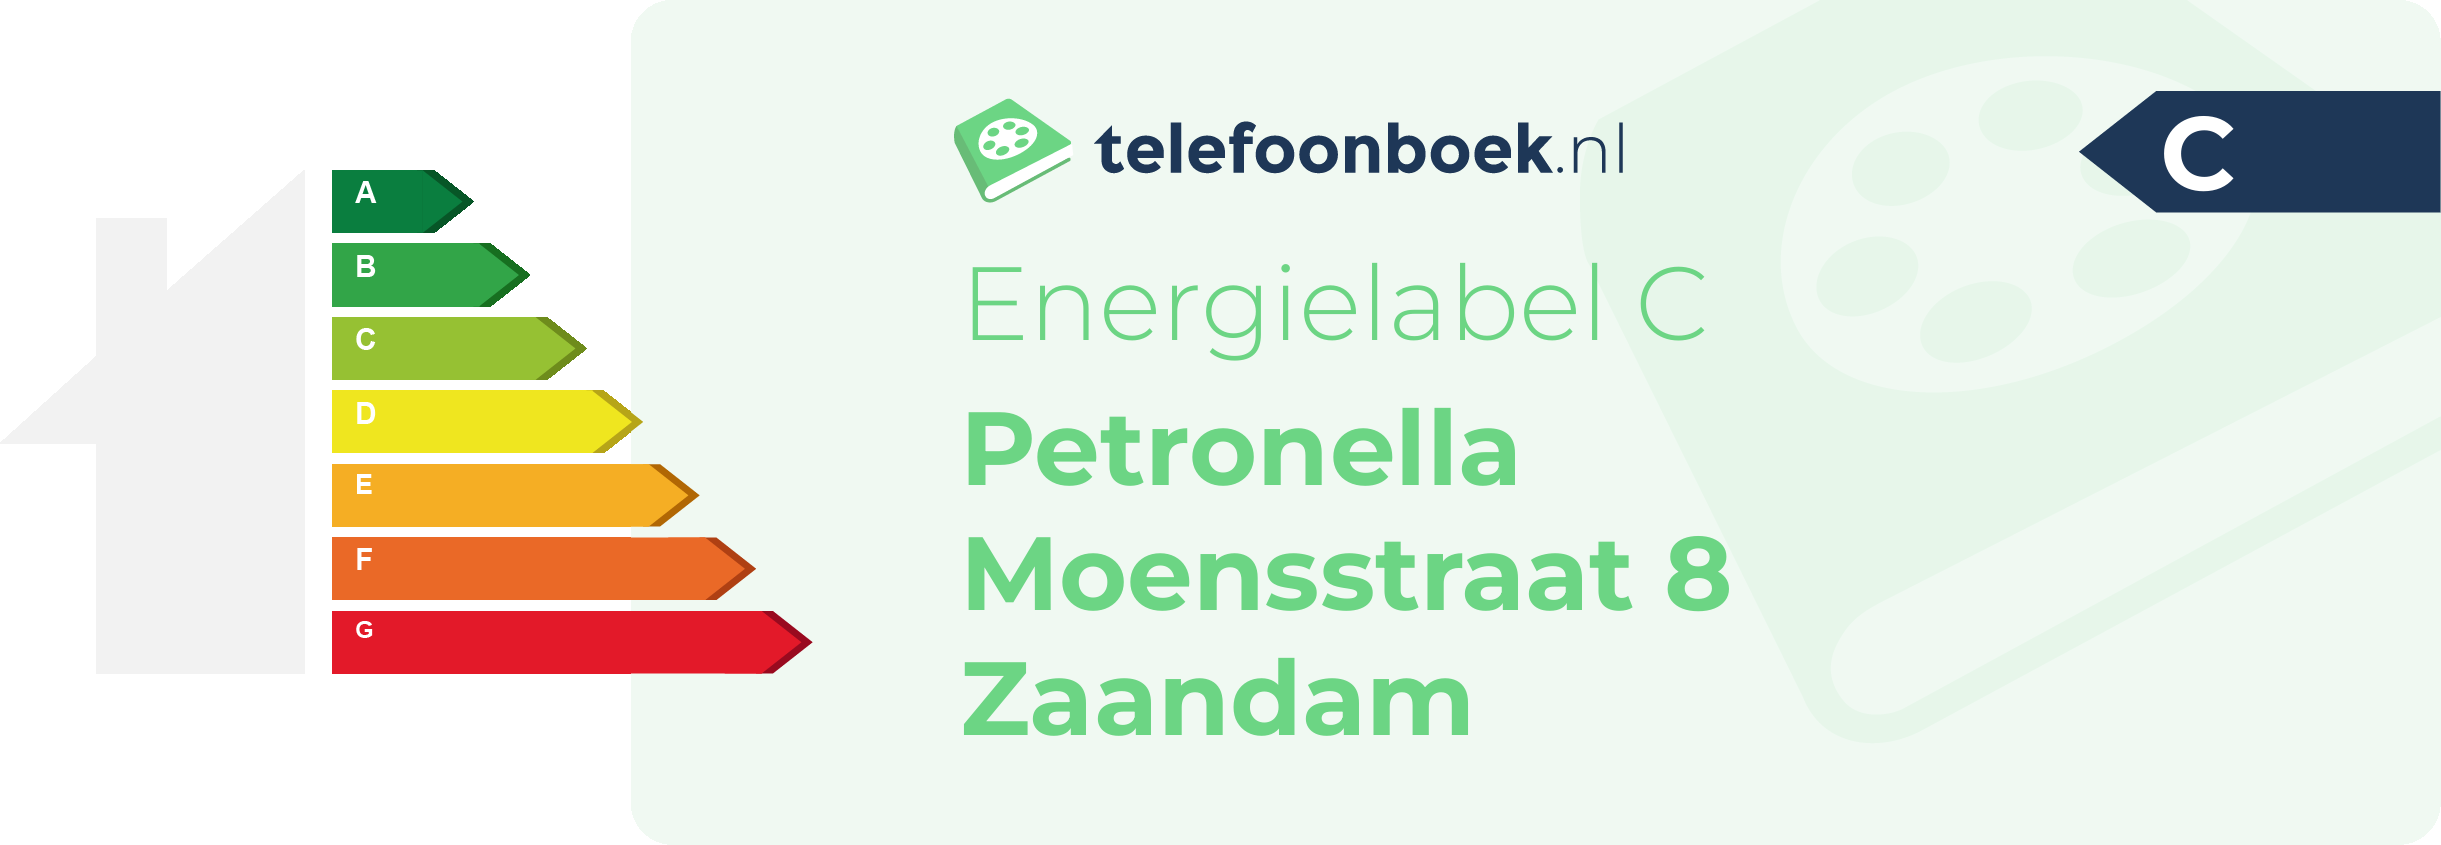 Energielabel Petronella Moensstraat 8 Zaandam